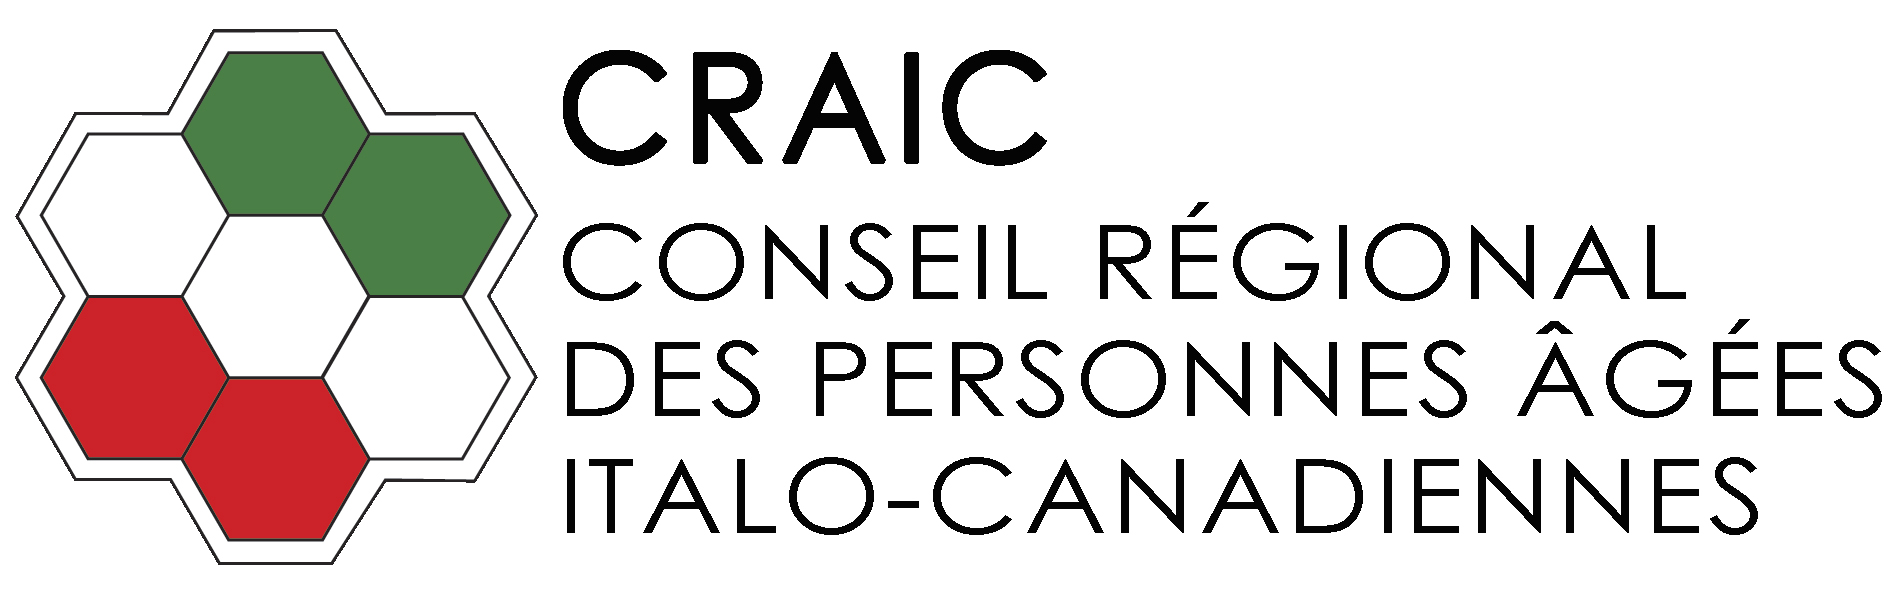 Conseil régional des personnes âgées italo-canadiennes - CRAIC